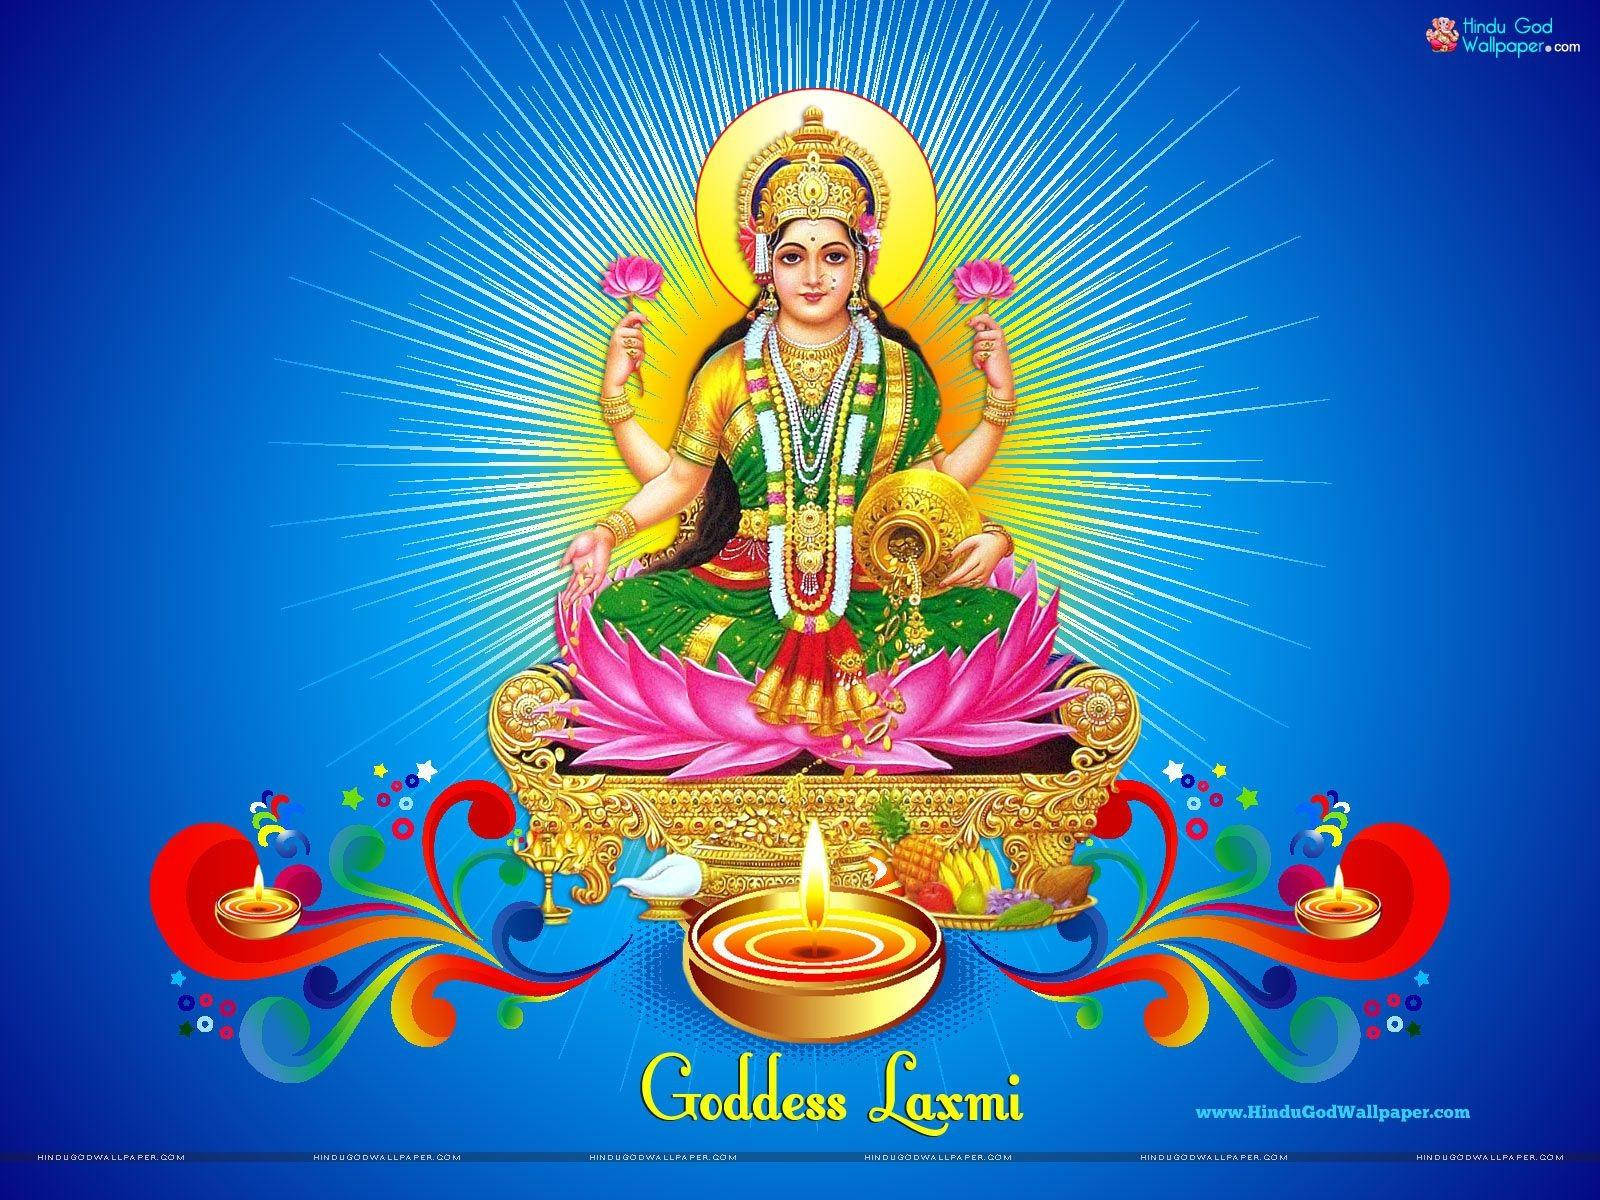 Lakshmi Of Hindu Mythology